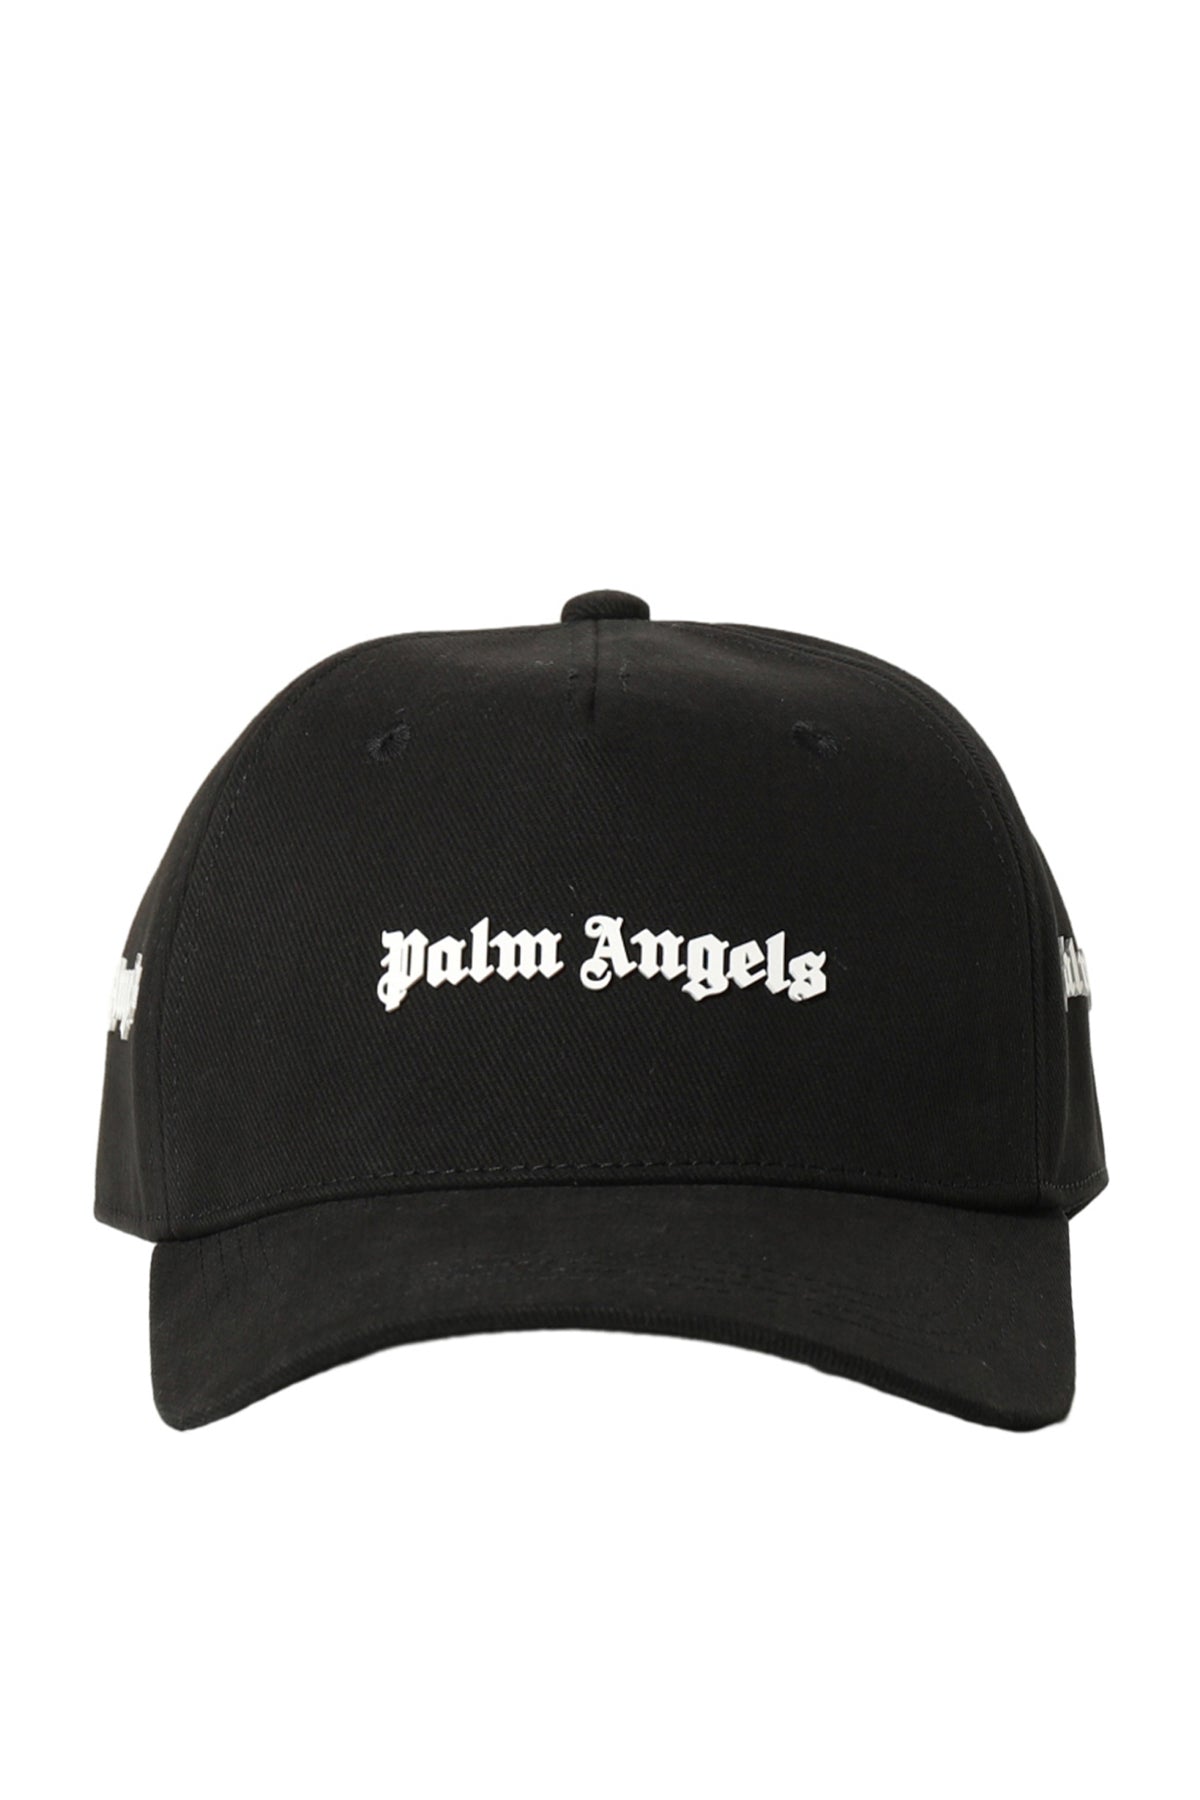 PALM ANGELS LOGO CAP / BLK WHT